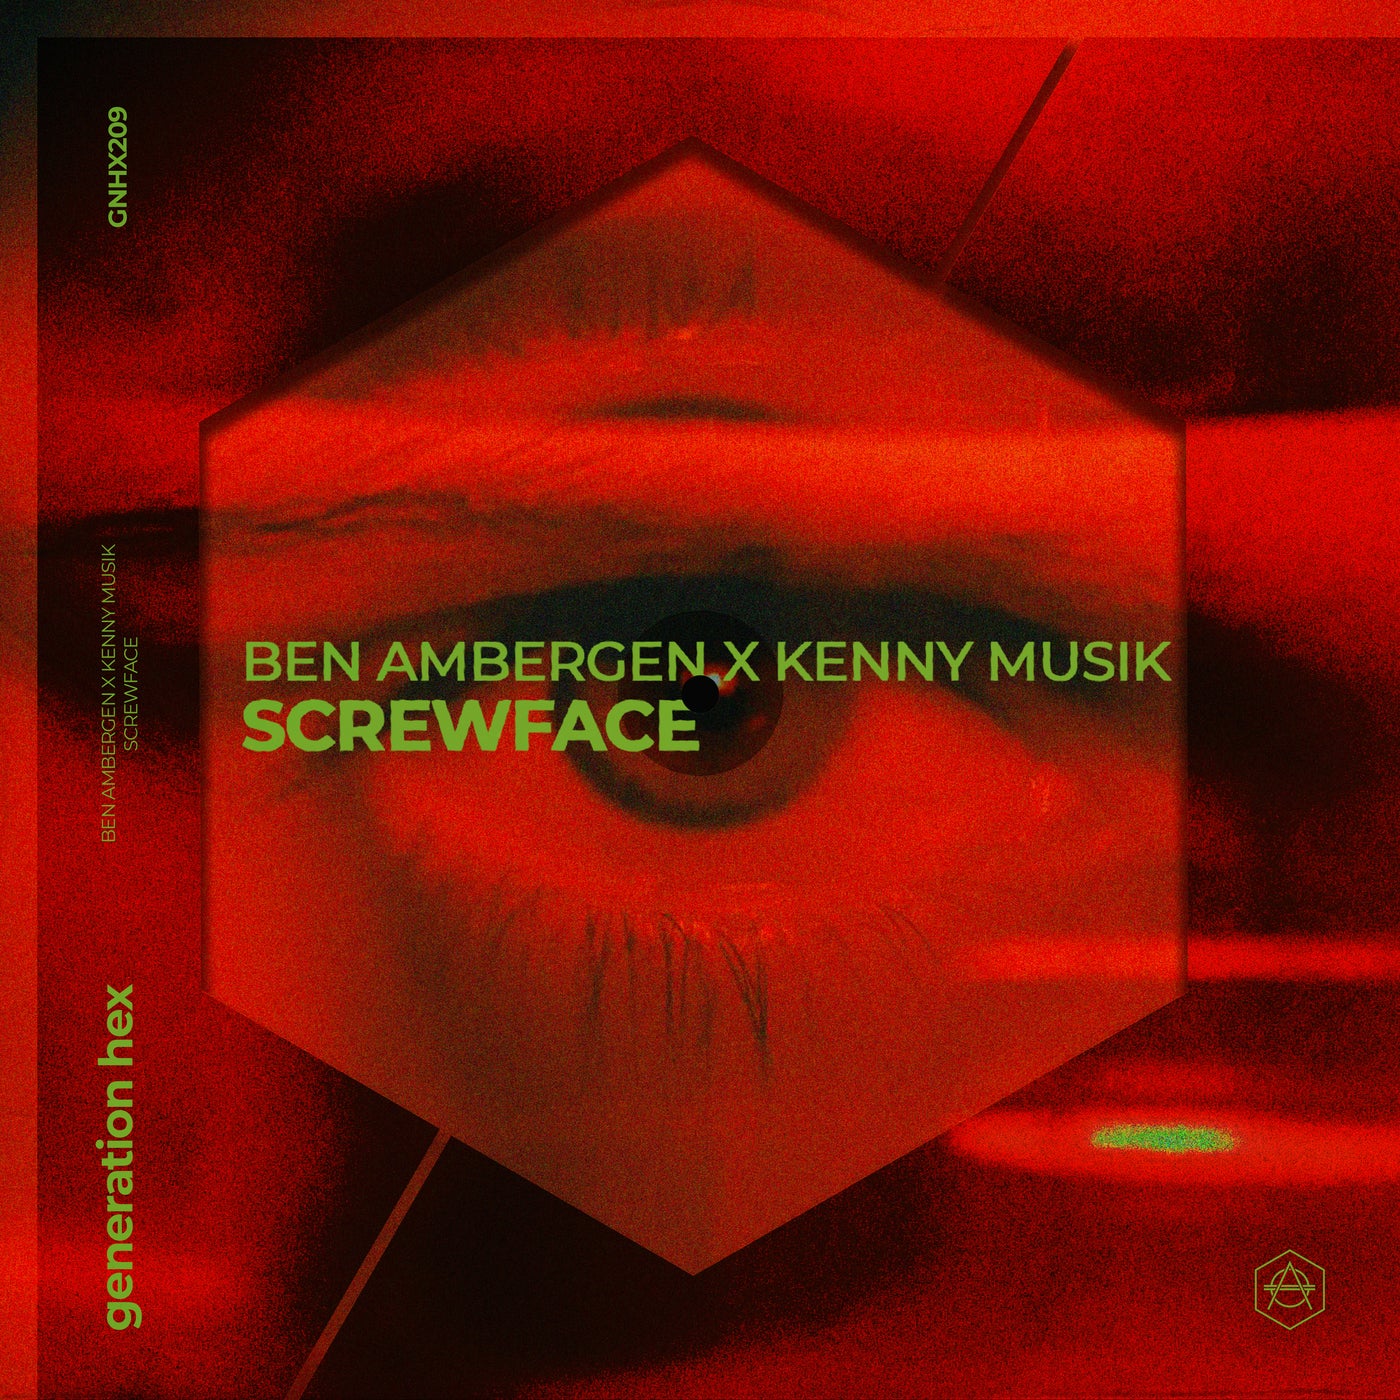 Ben Ambergen, Kenny Musik - Screwface - Extended Mix [GNHX209B]